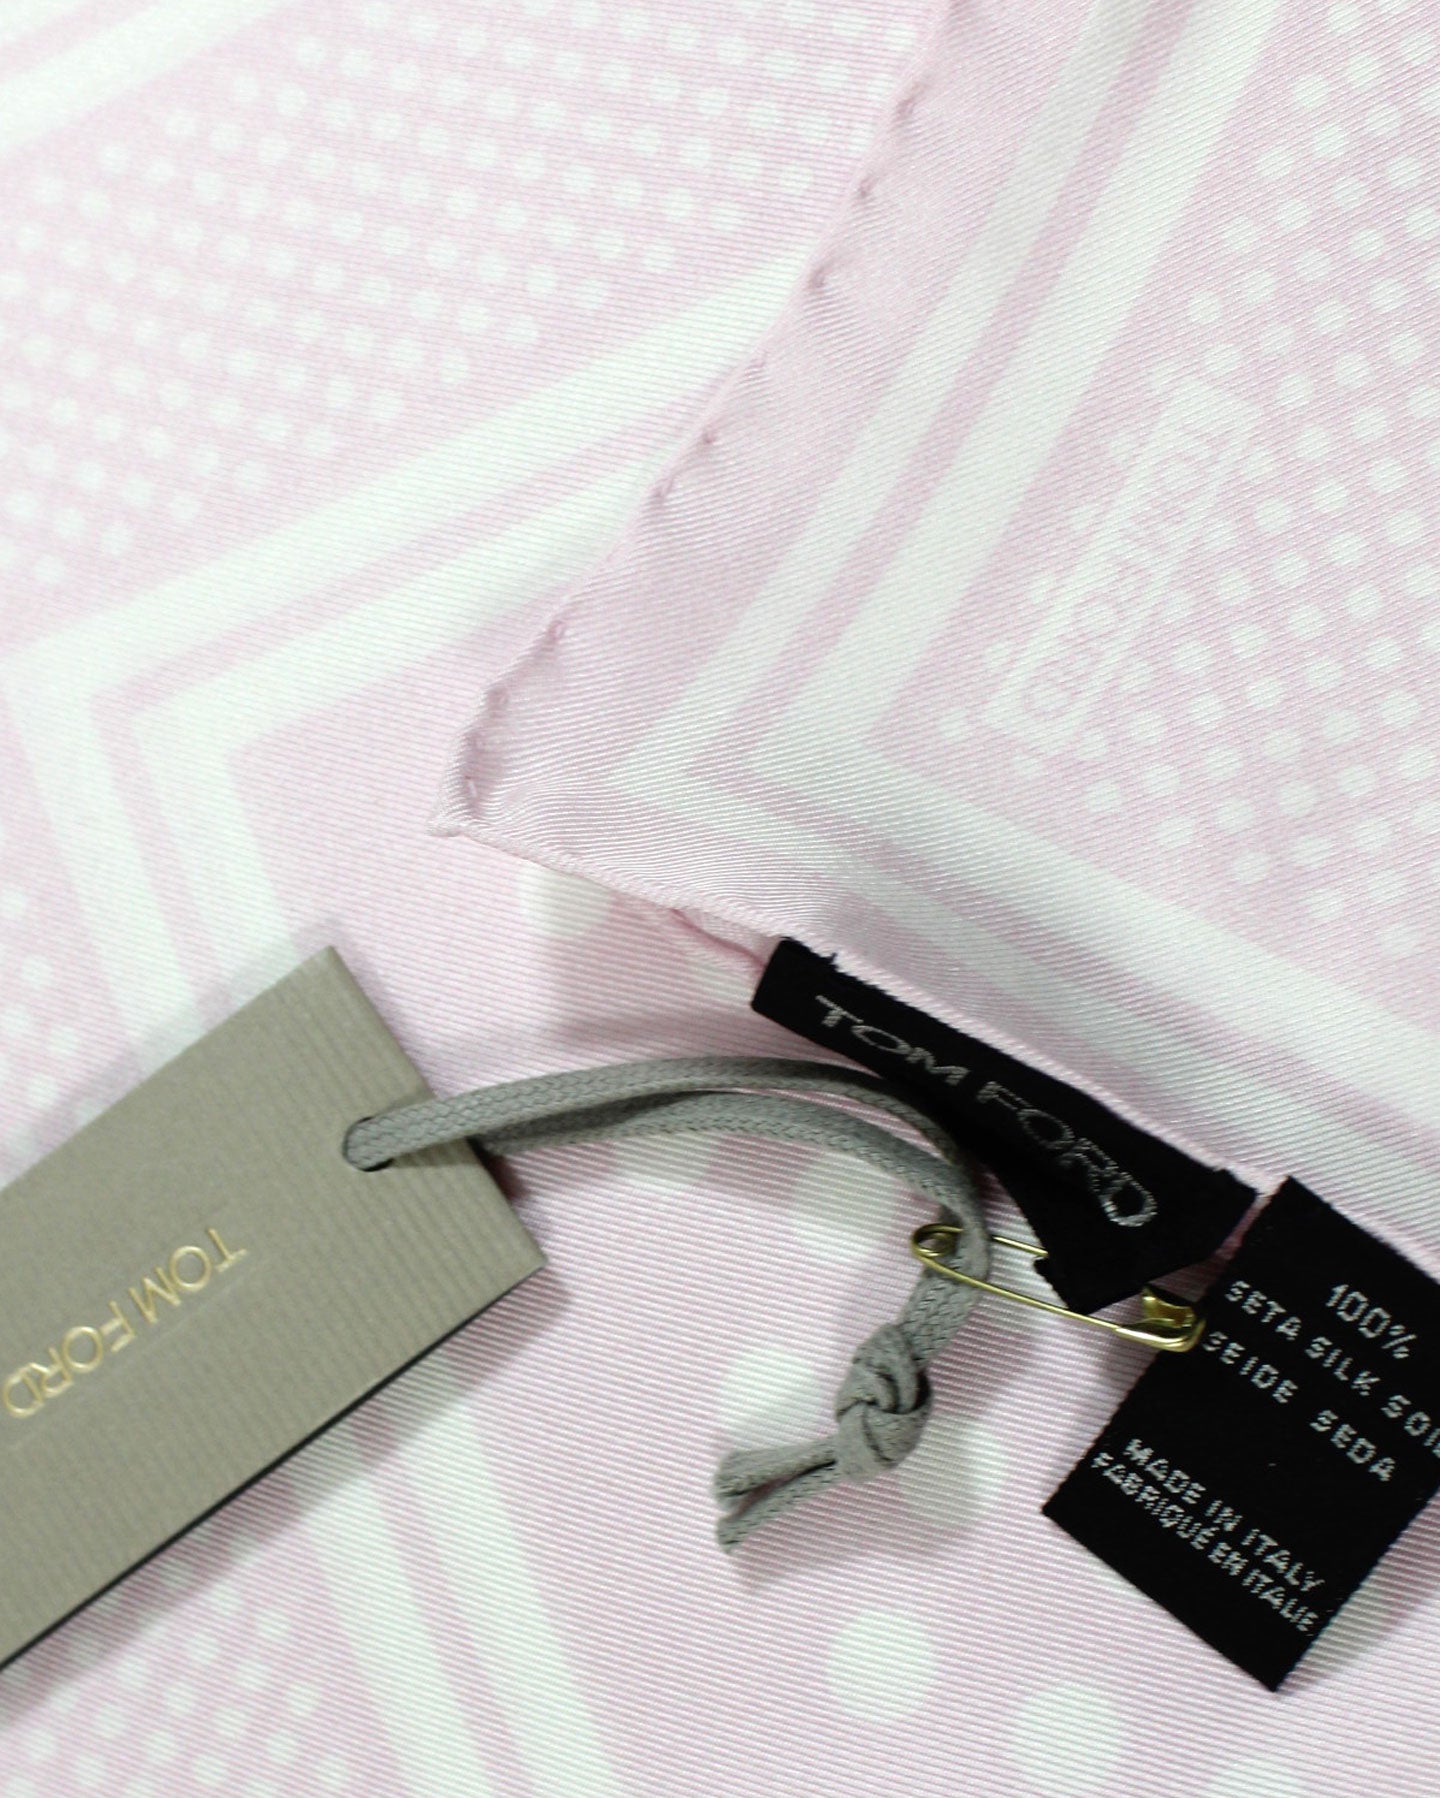 Tom Ford Silk Pocket Square Pink Dots Design